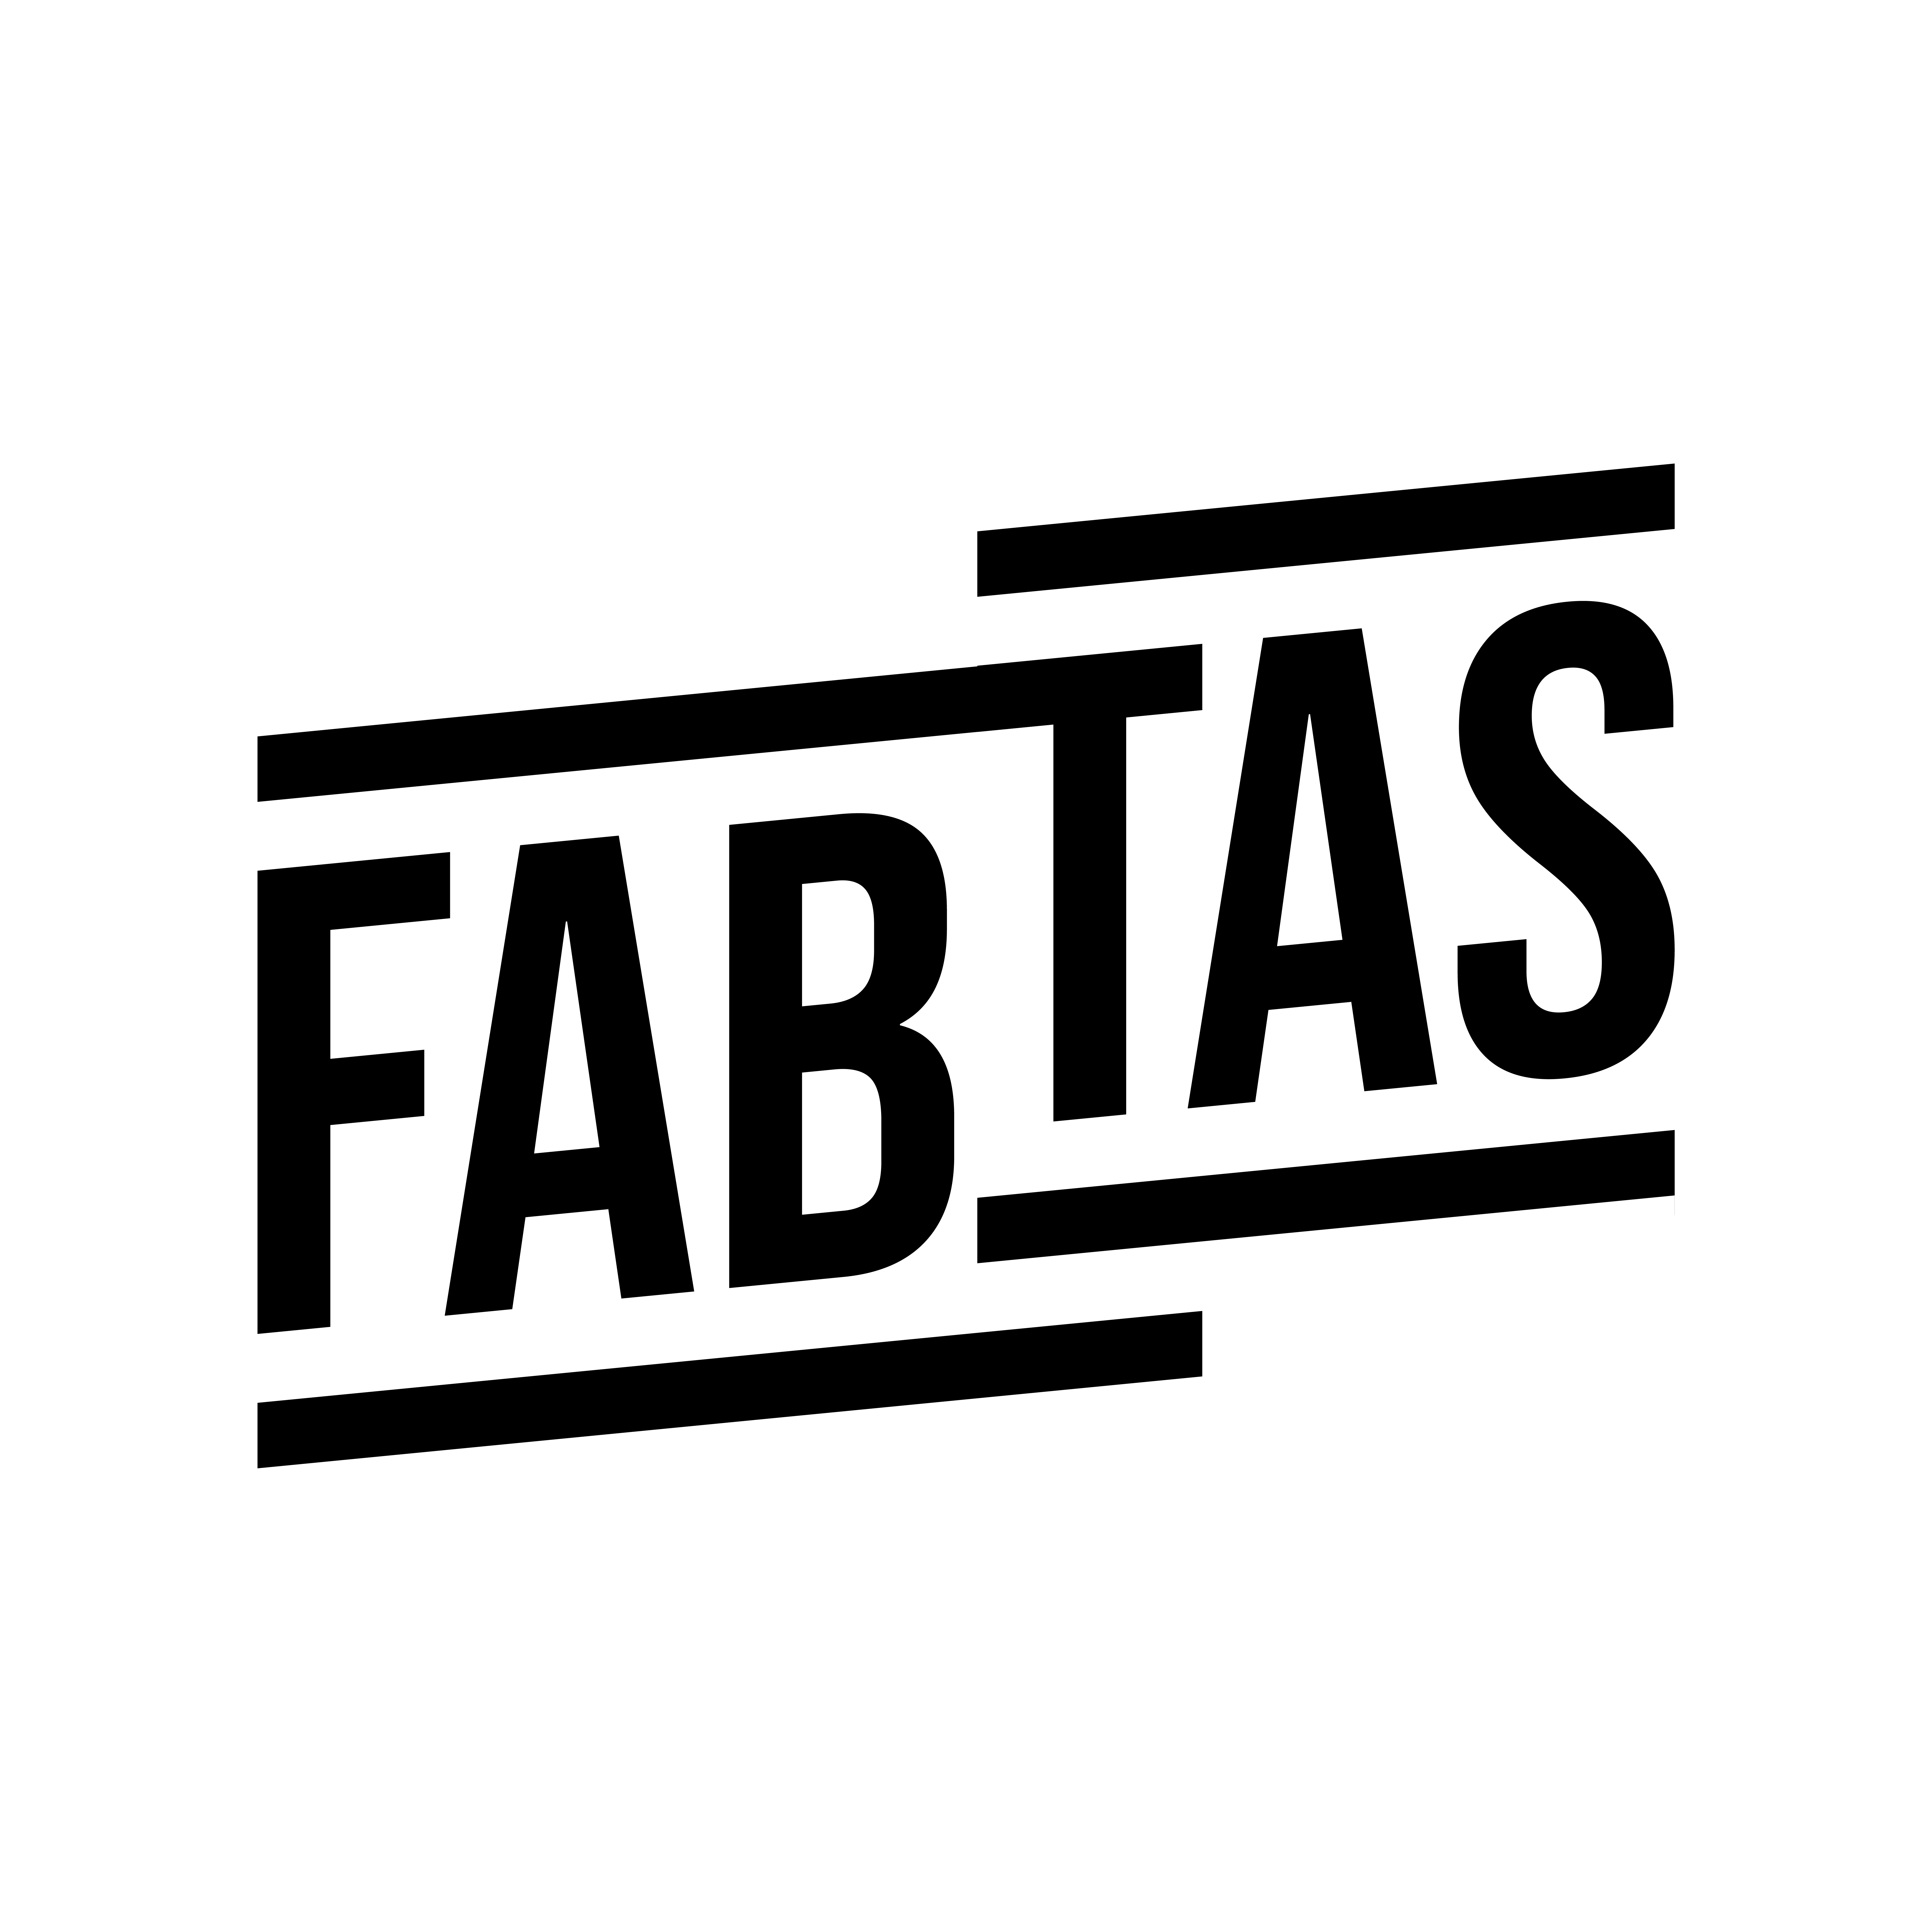 FABTAS Black Logo 5